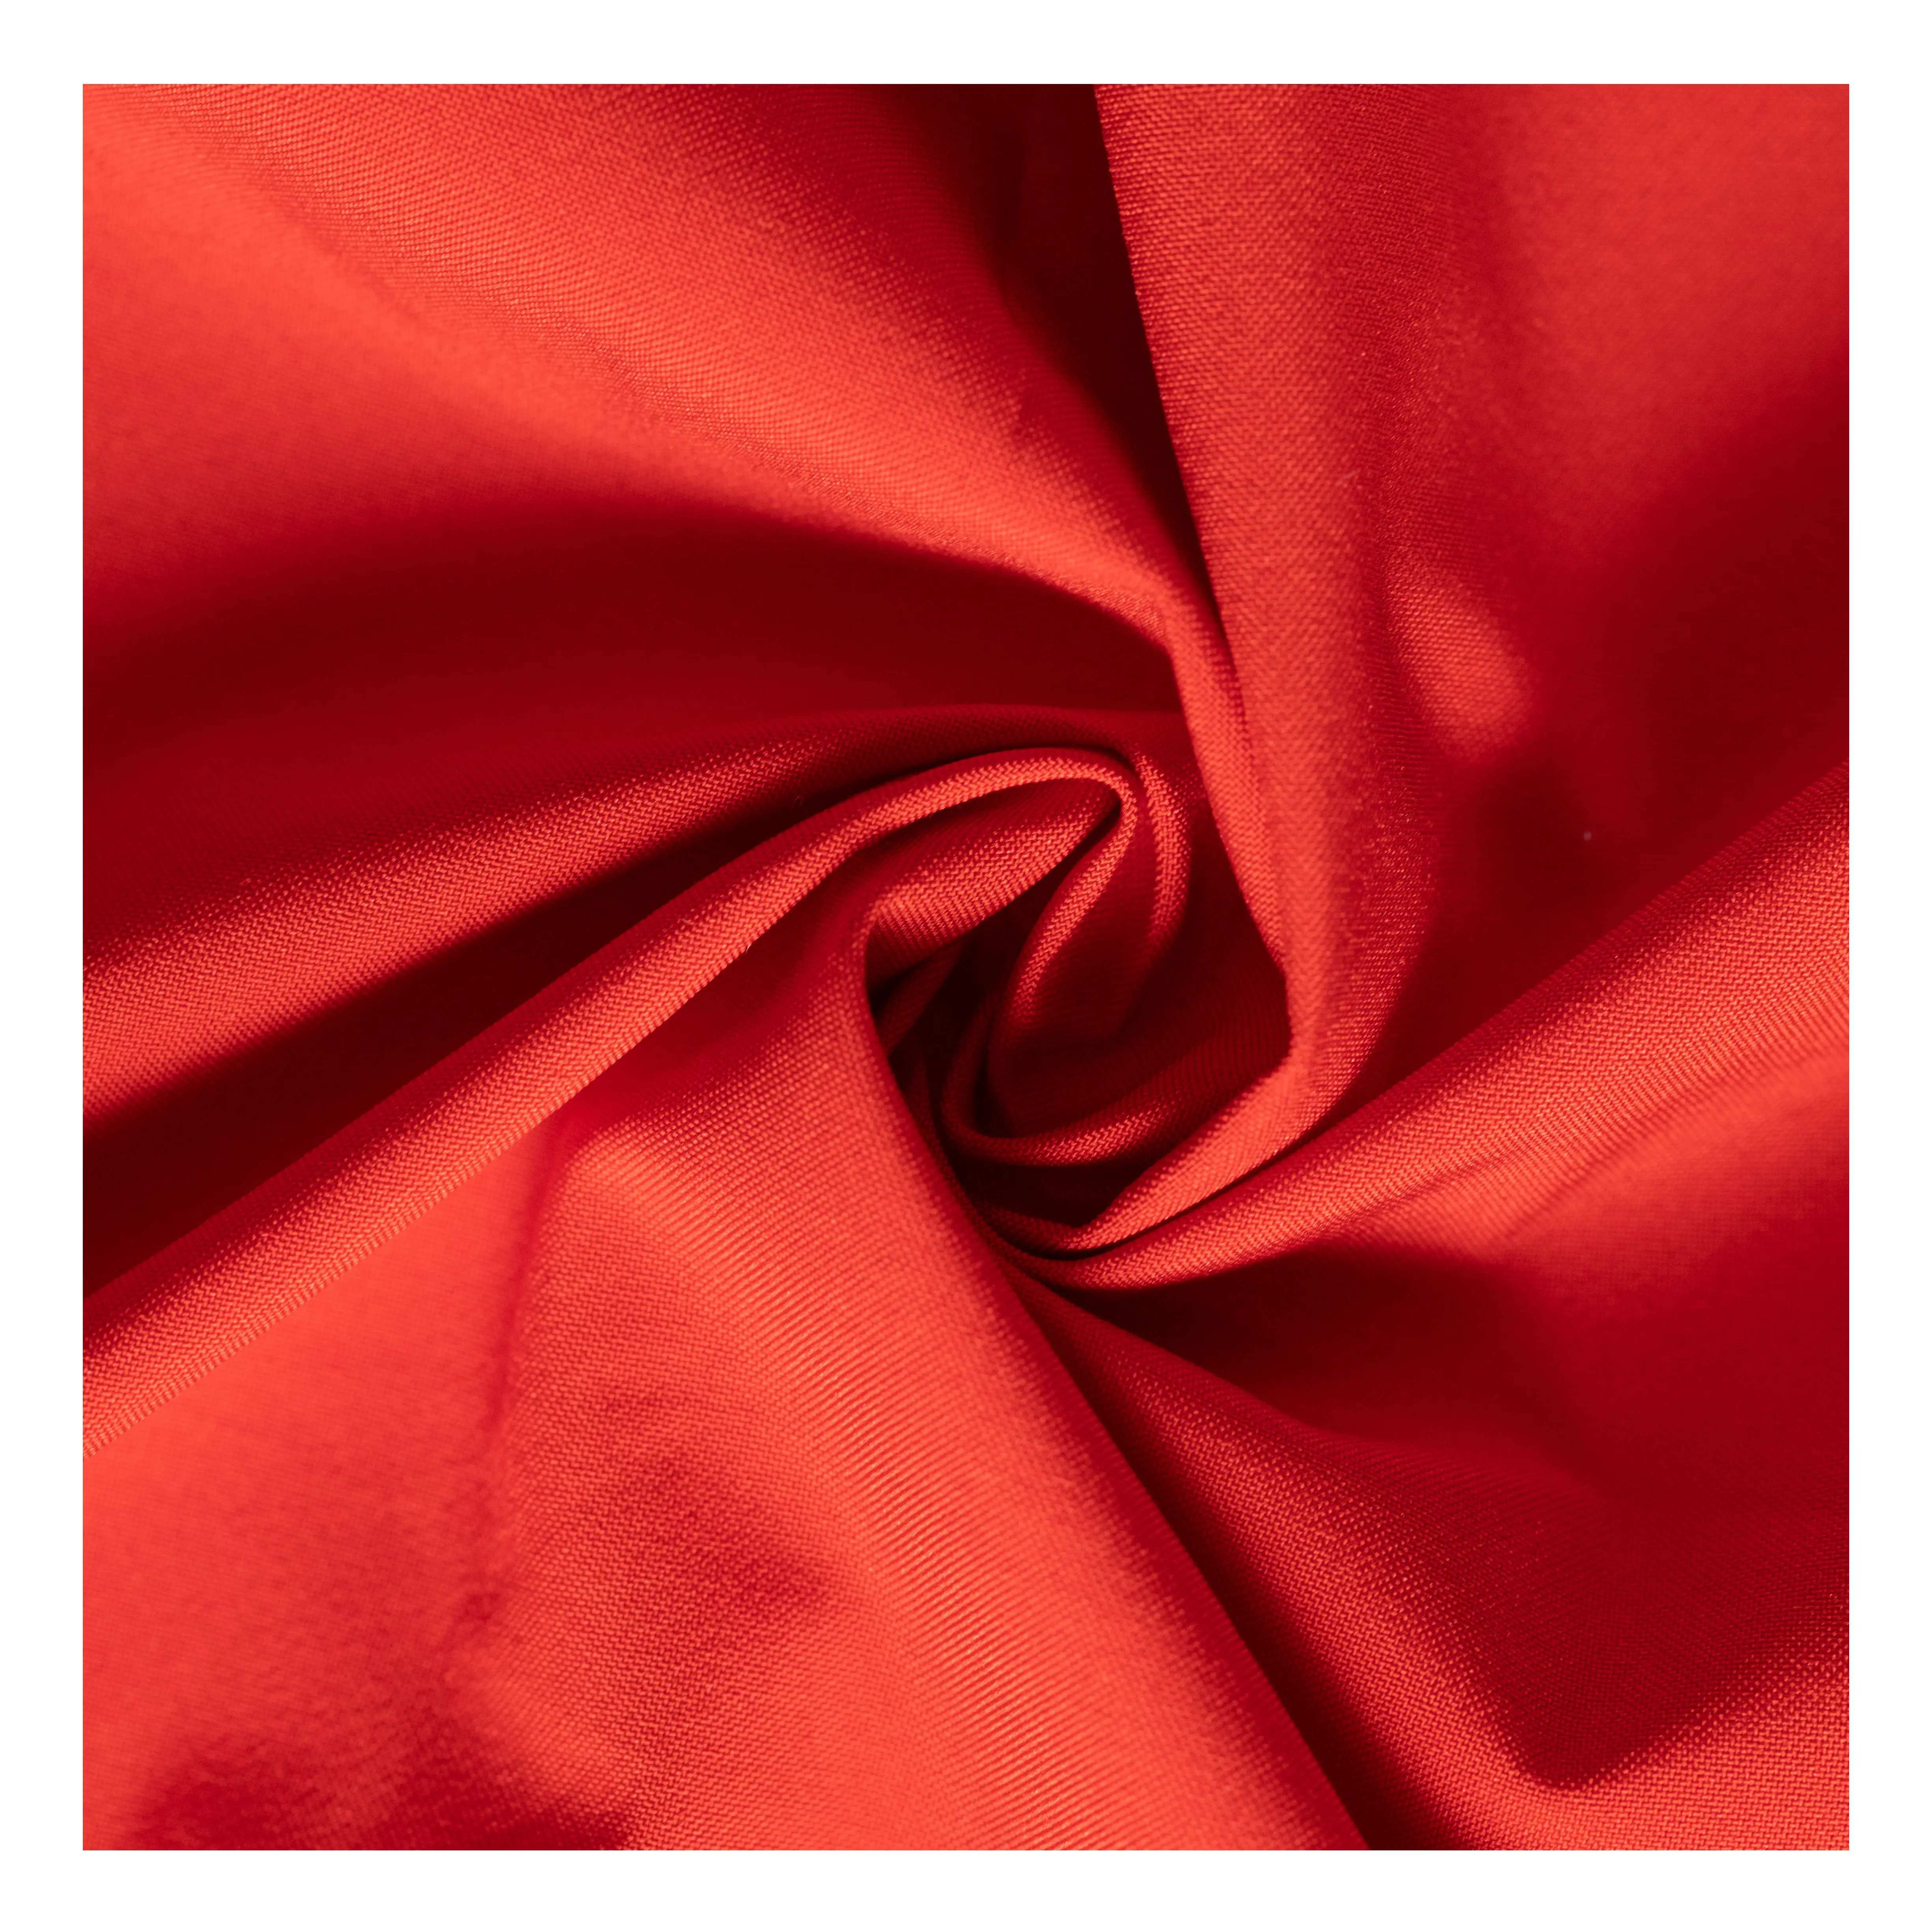 ผ้าไมโครไฟเบอร์กันน้ำกันลมหลากสีเคลือบด้วย TPU,ผ้าออกซ์ฟอร์ดโพลีเอสเตอร์สีแดงฉ่ำสดใสสำหรับแจ็คเก็ต